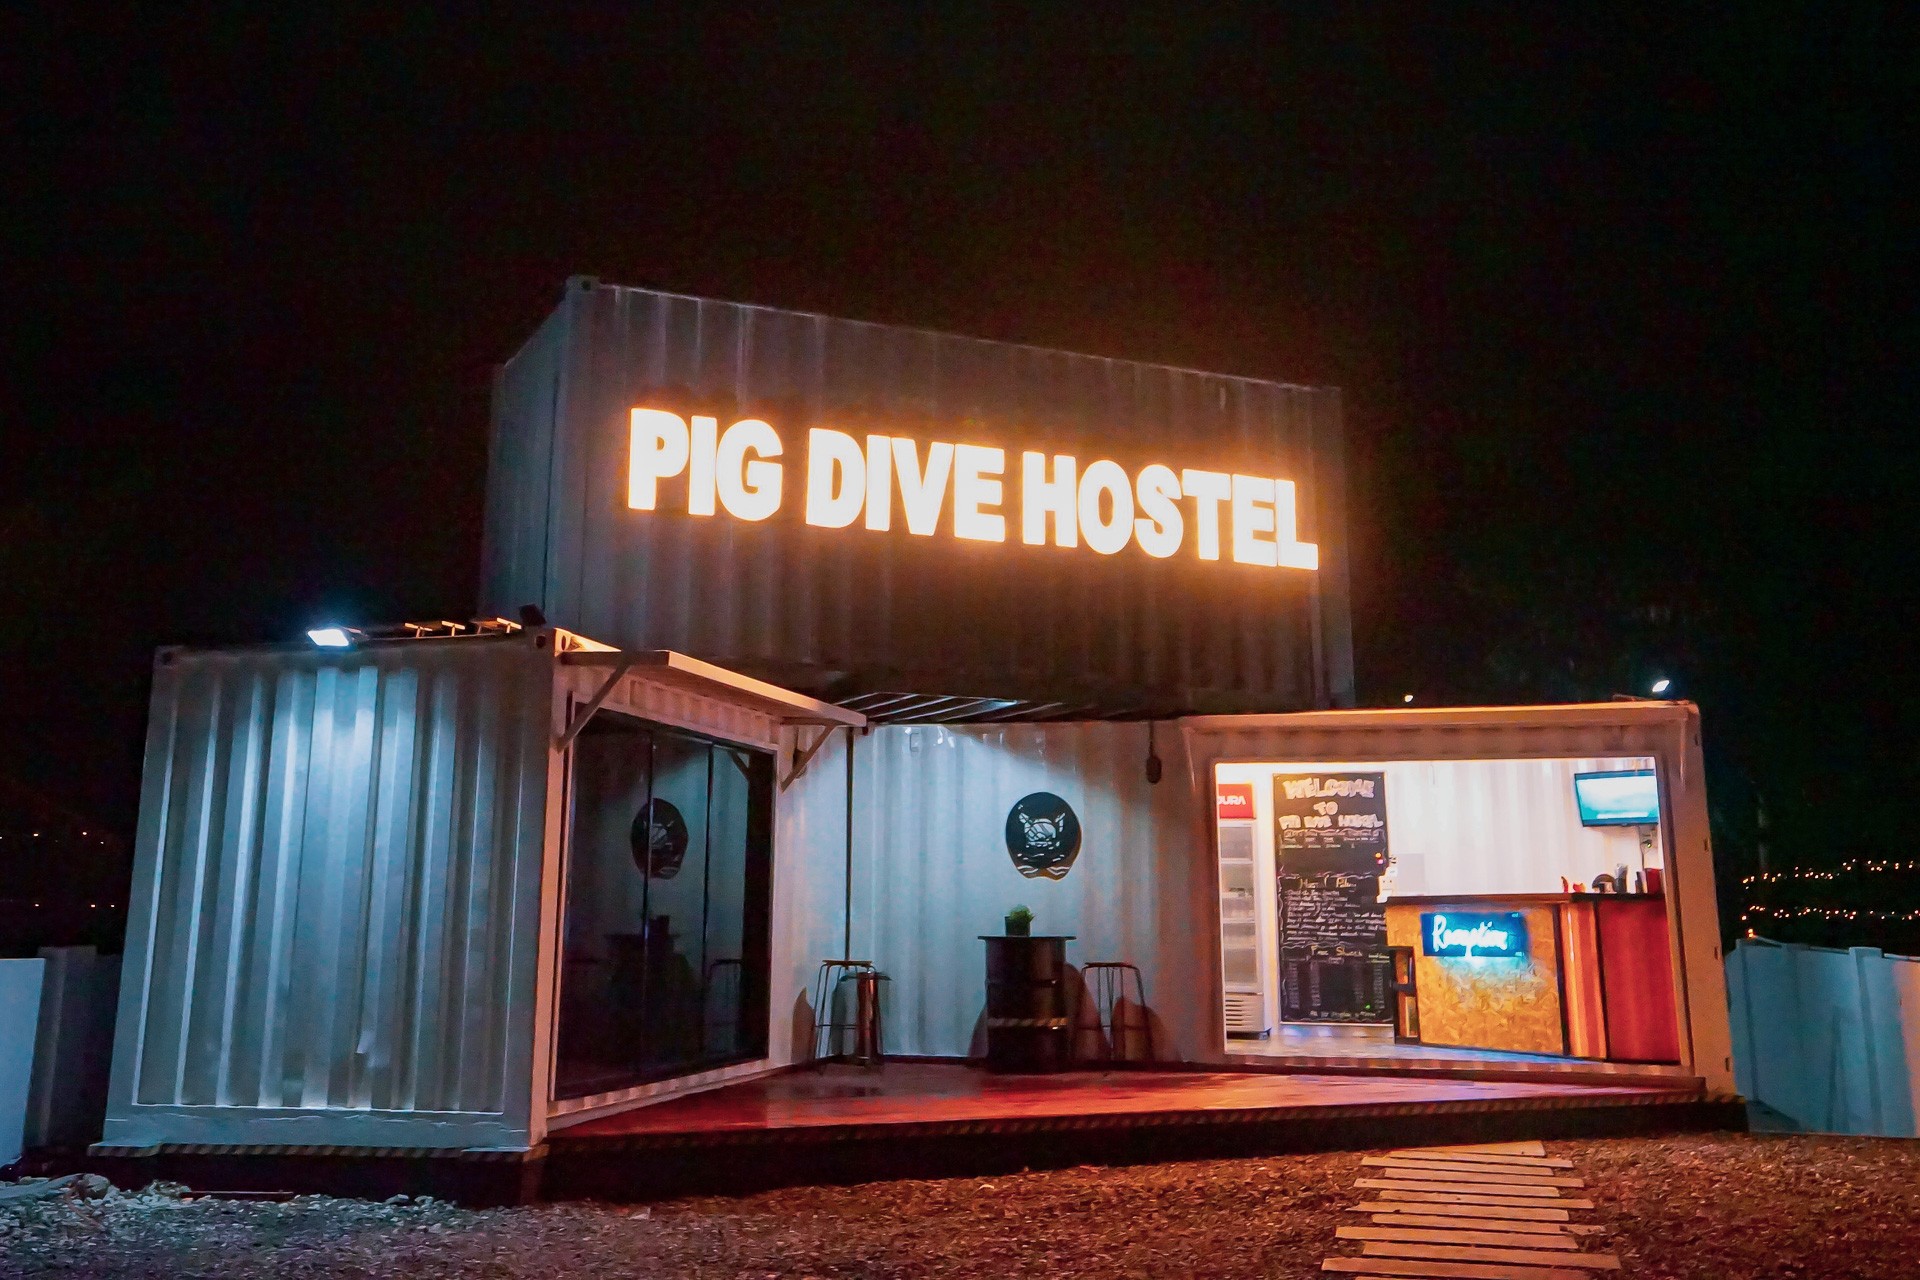 宿霧墨寶住宿》Pig dive hostel-台灣人開的墨寶背包客棧 絕美白色貨櫃屋